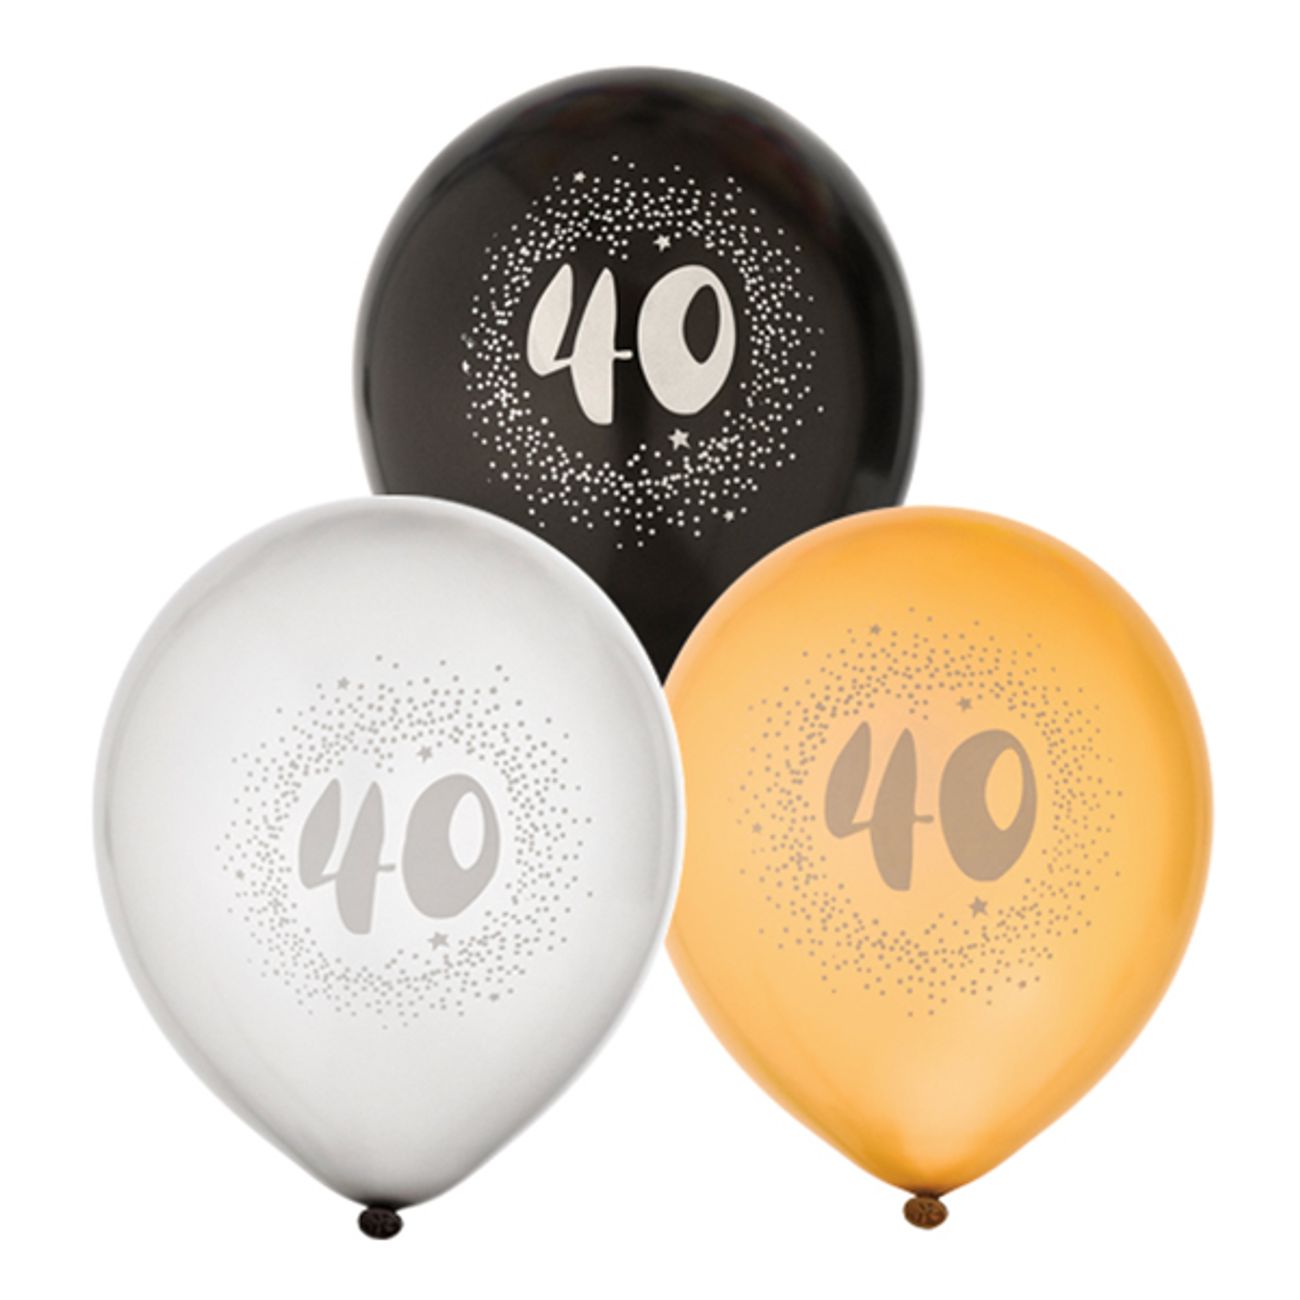 ballonger-svartvitguld-40-1